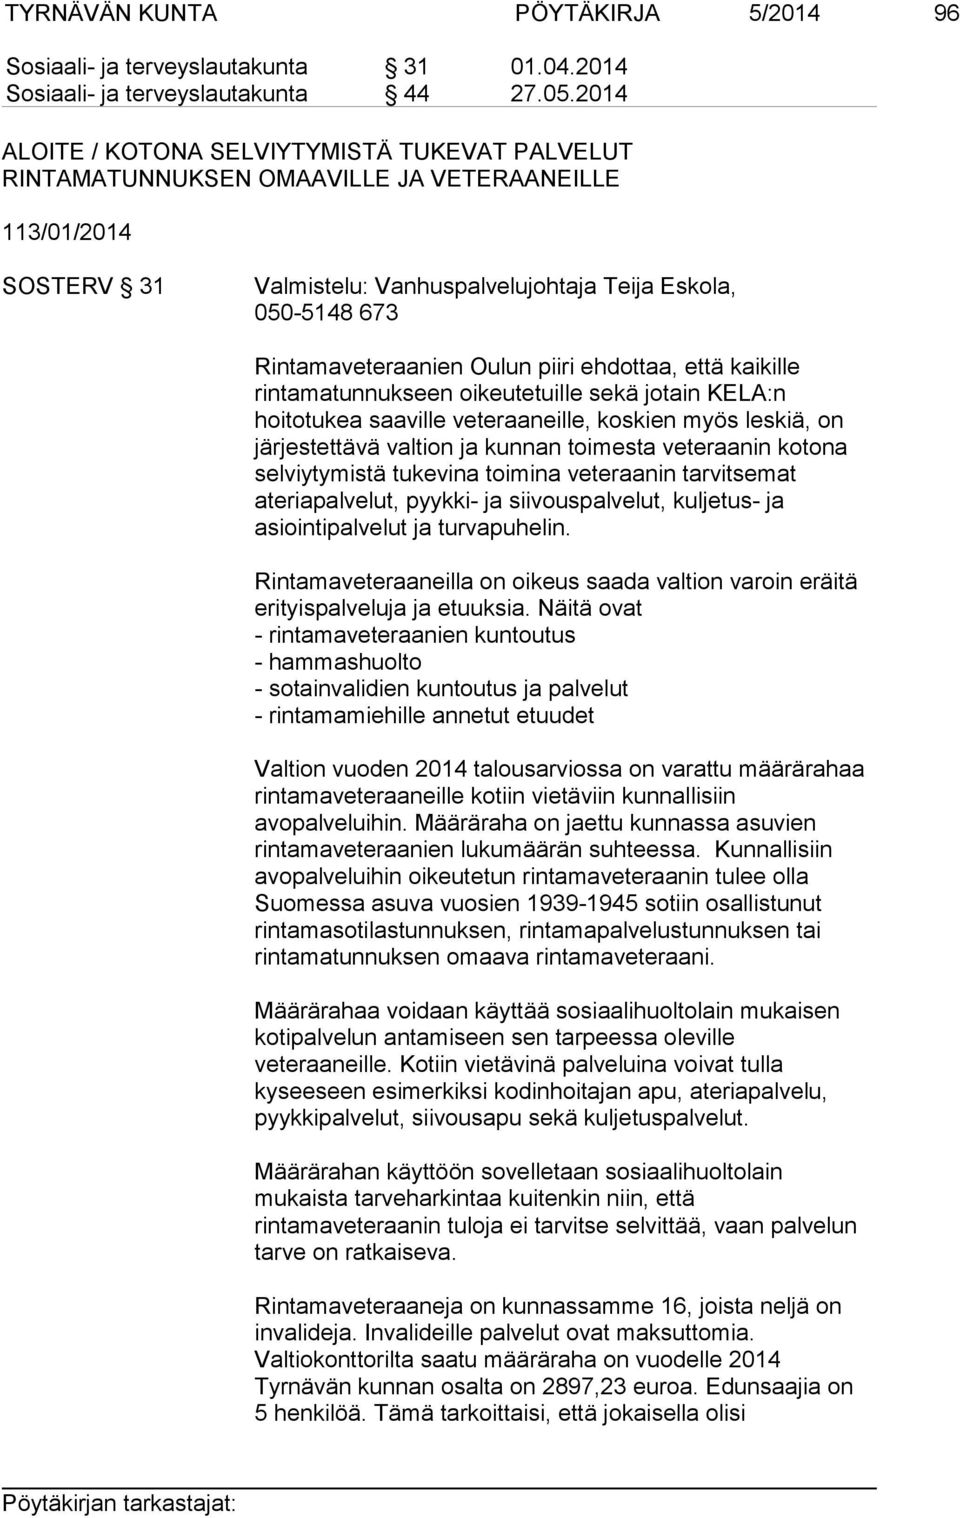 Oulun piiri ehdottaa, että kaikille rintamatunnukseen oikeutetuille sekä jotain KELA:n hoitotukea saaville veteraaneille, koskien myös leskiä, on järjestettävä valtion ja kunnan toimesta veteraanin